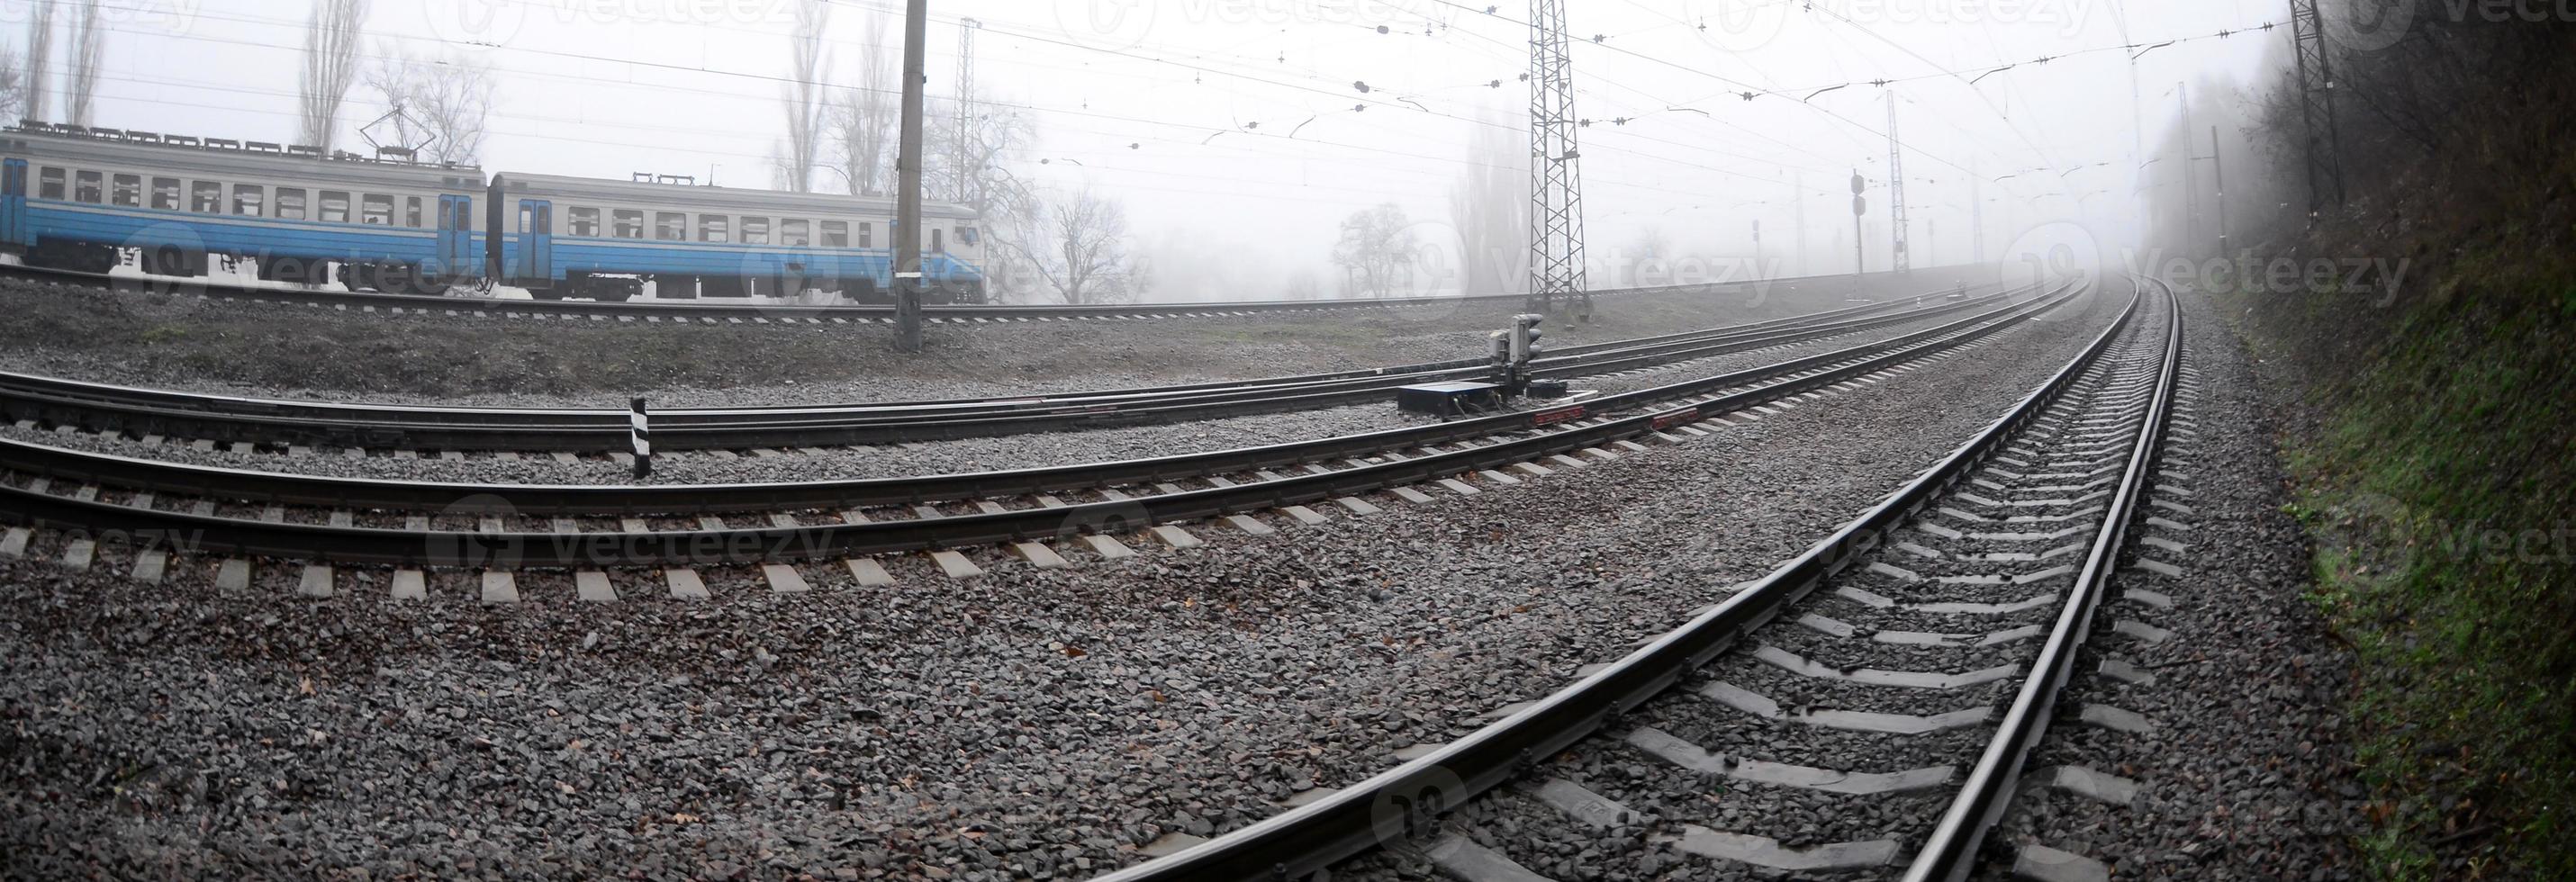 de oekraïens buitenwijk trein haast langs de spoorweg in een nevelig ochtend. vissenoog foto met is gestegen vervorming